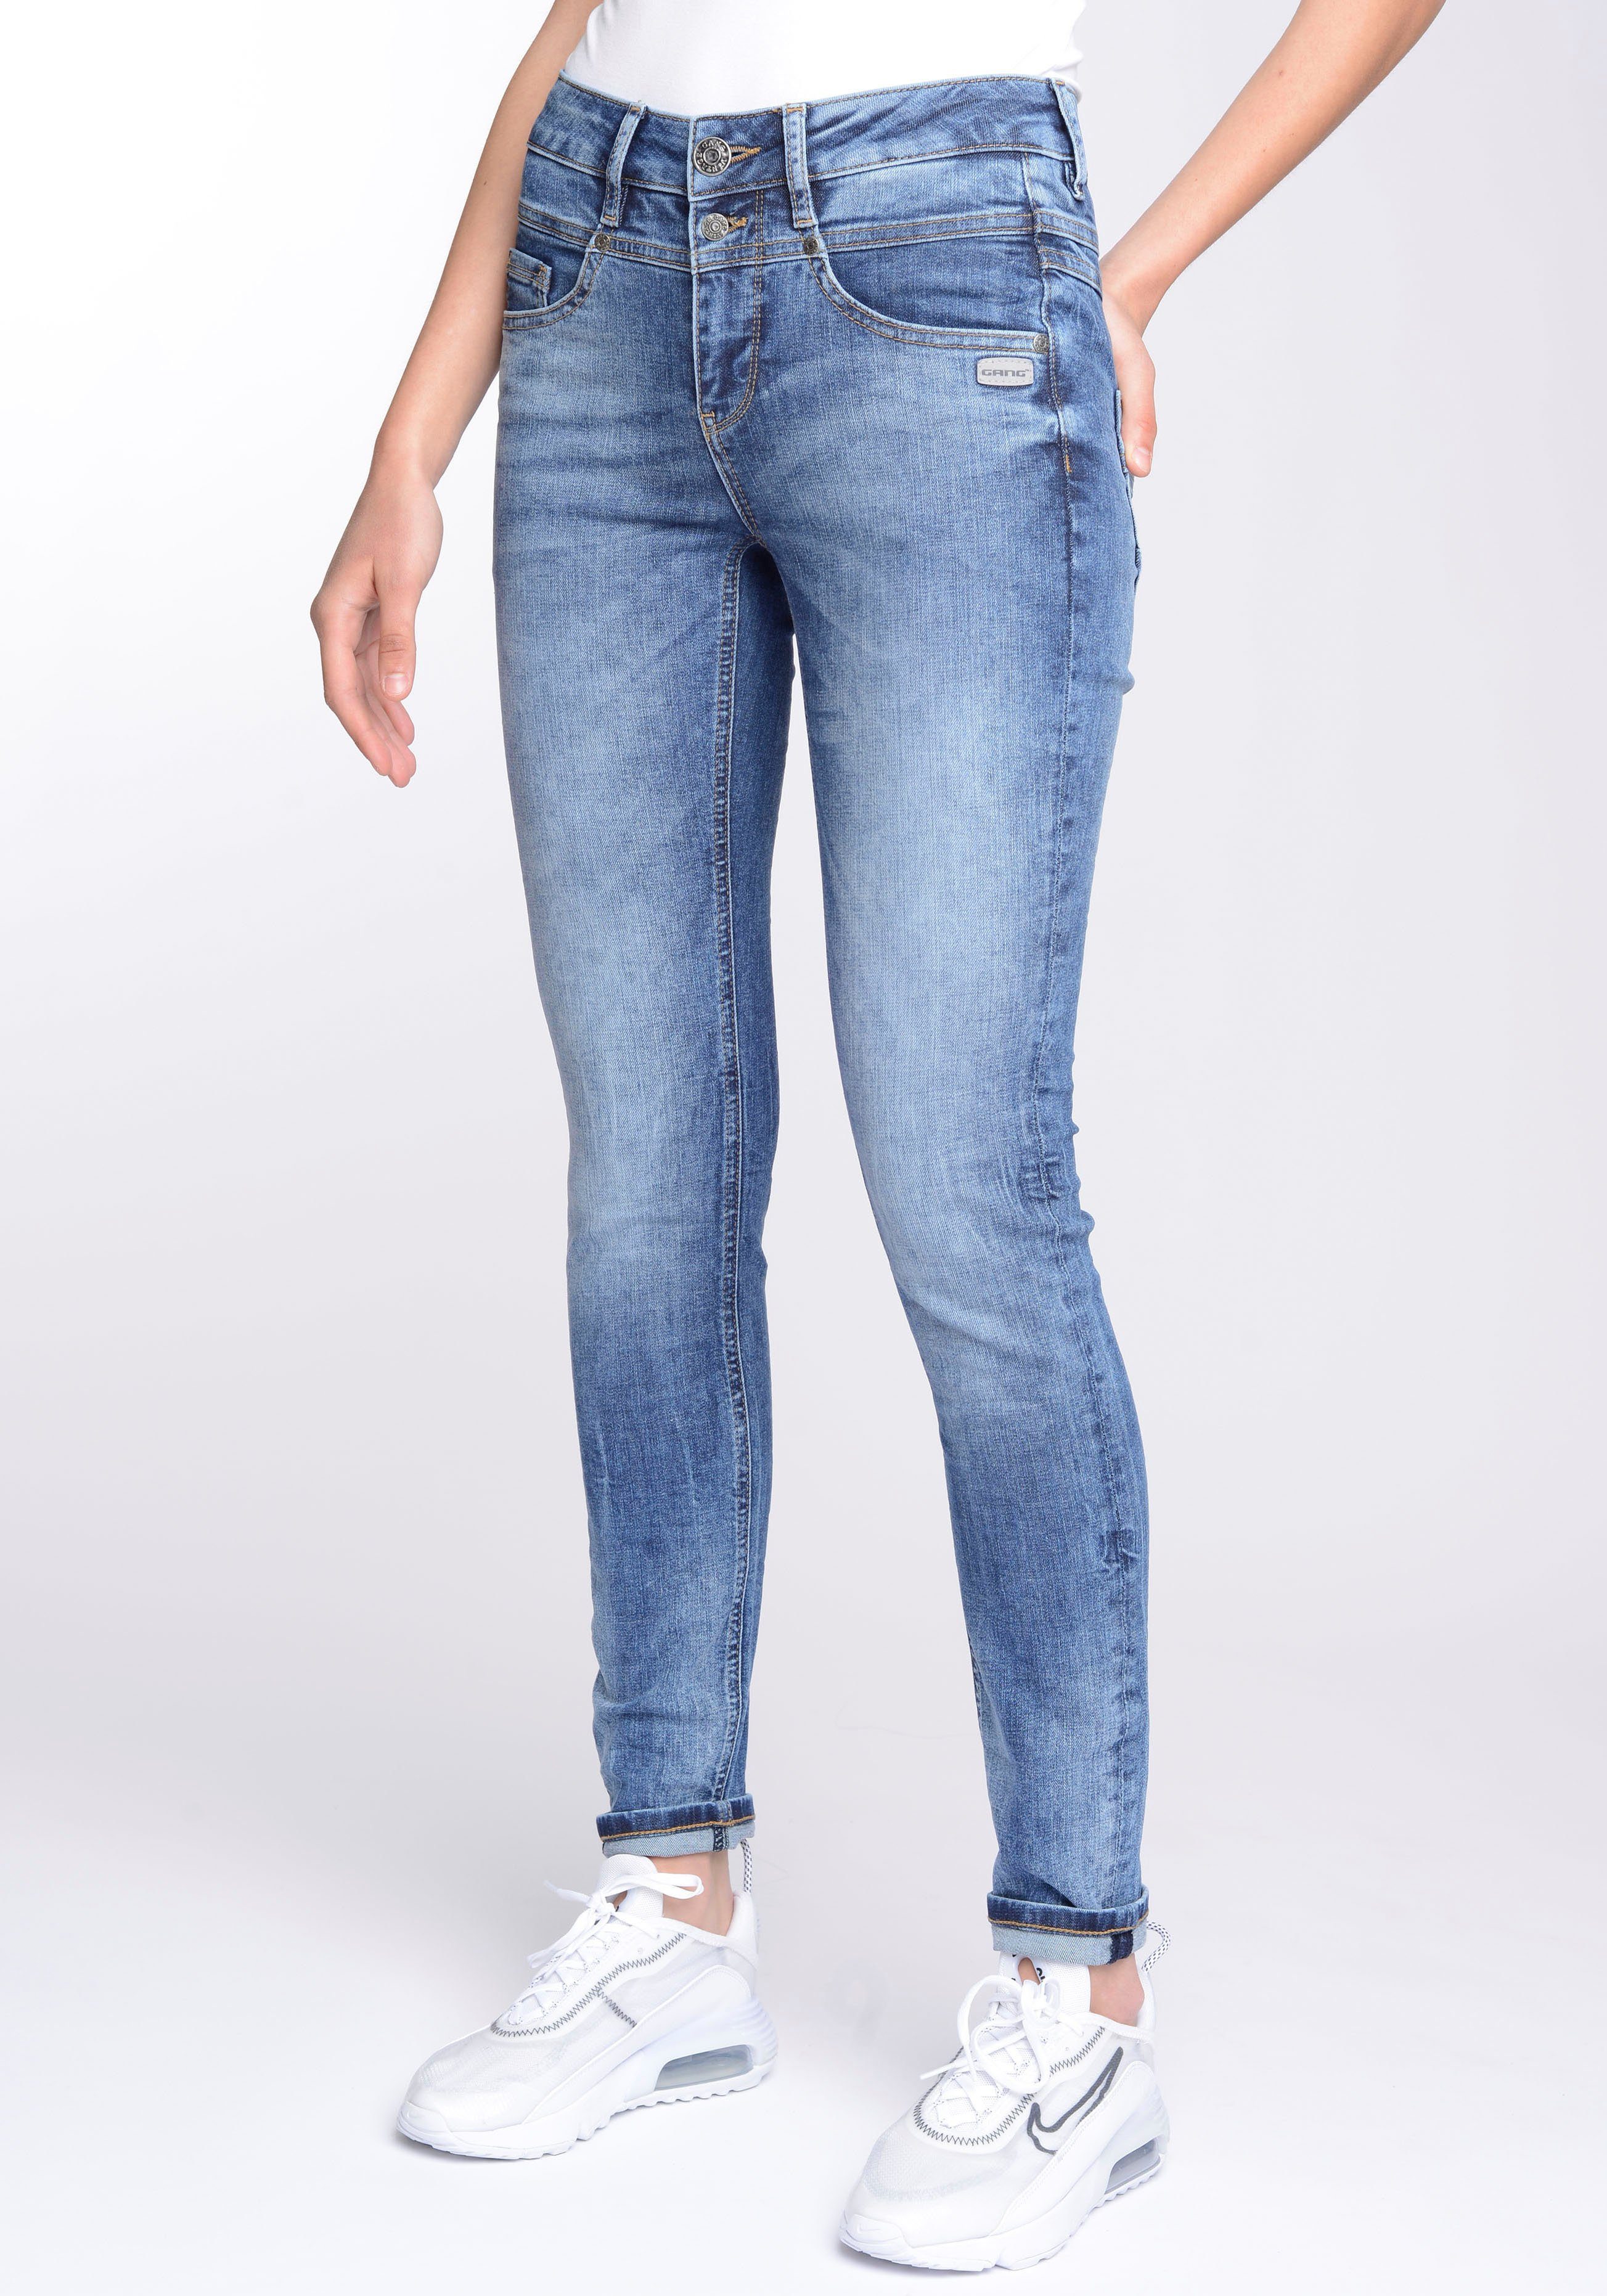 GANG Skinny-fit-Jeans Passe mit 3-Knopf-Verschluss und Wash blue) vorne Midblue (mid 94MORA